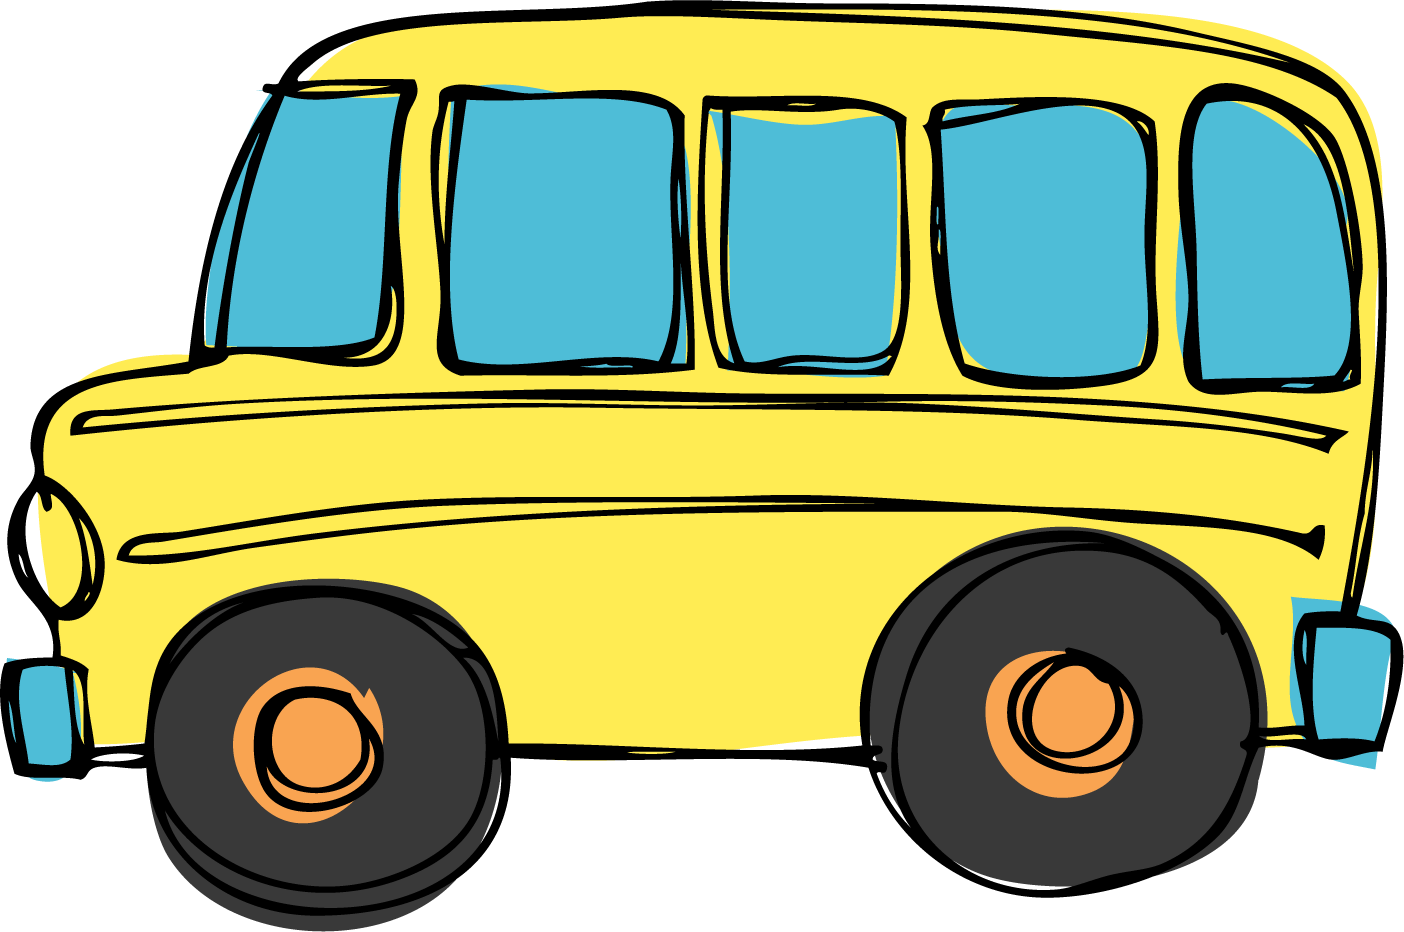 School bus images clip art